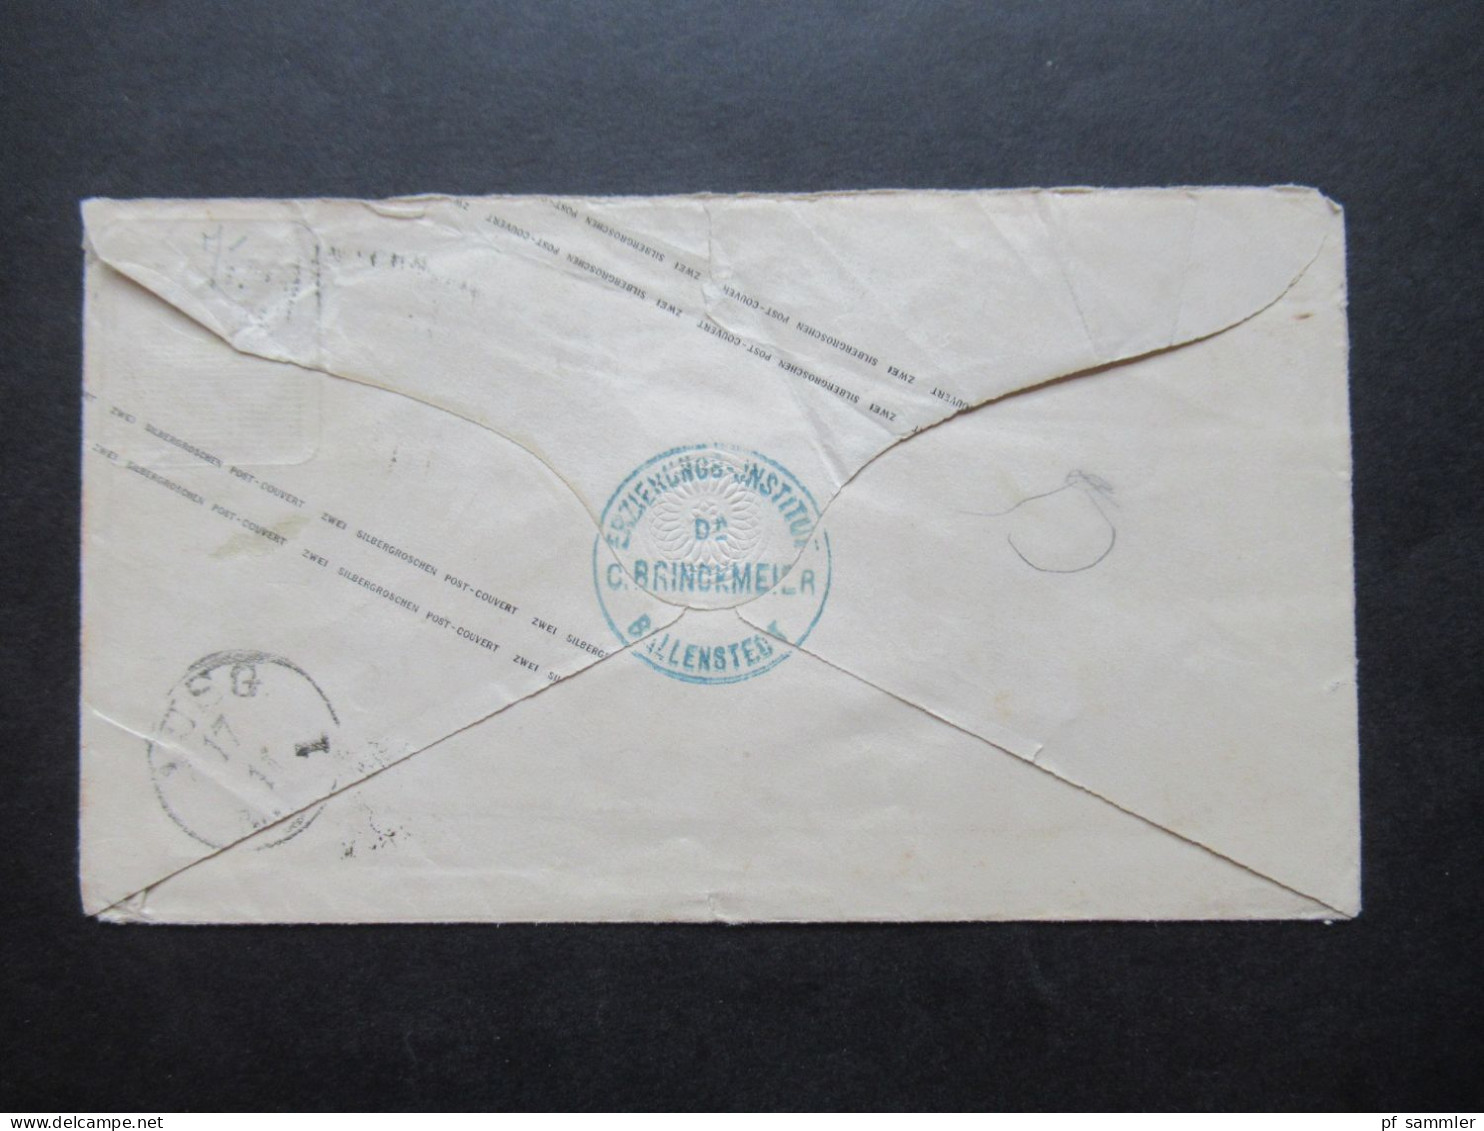 AD NDP 1863 GA Umschlag 2 Groschen Auf Umschlag Von Preußen U 31 A  Stempel Ra2 Ballenstedt An Die Gräfin Von Herzberg - Enteros Postales